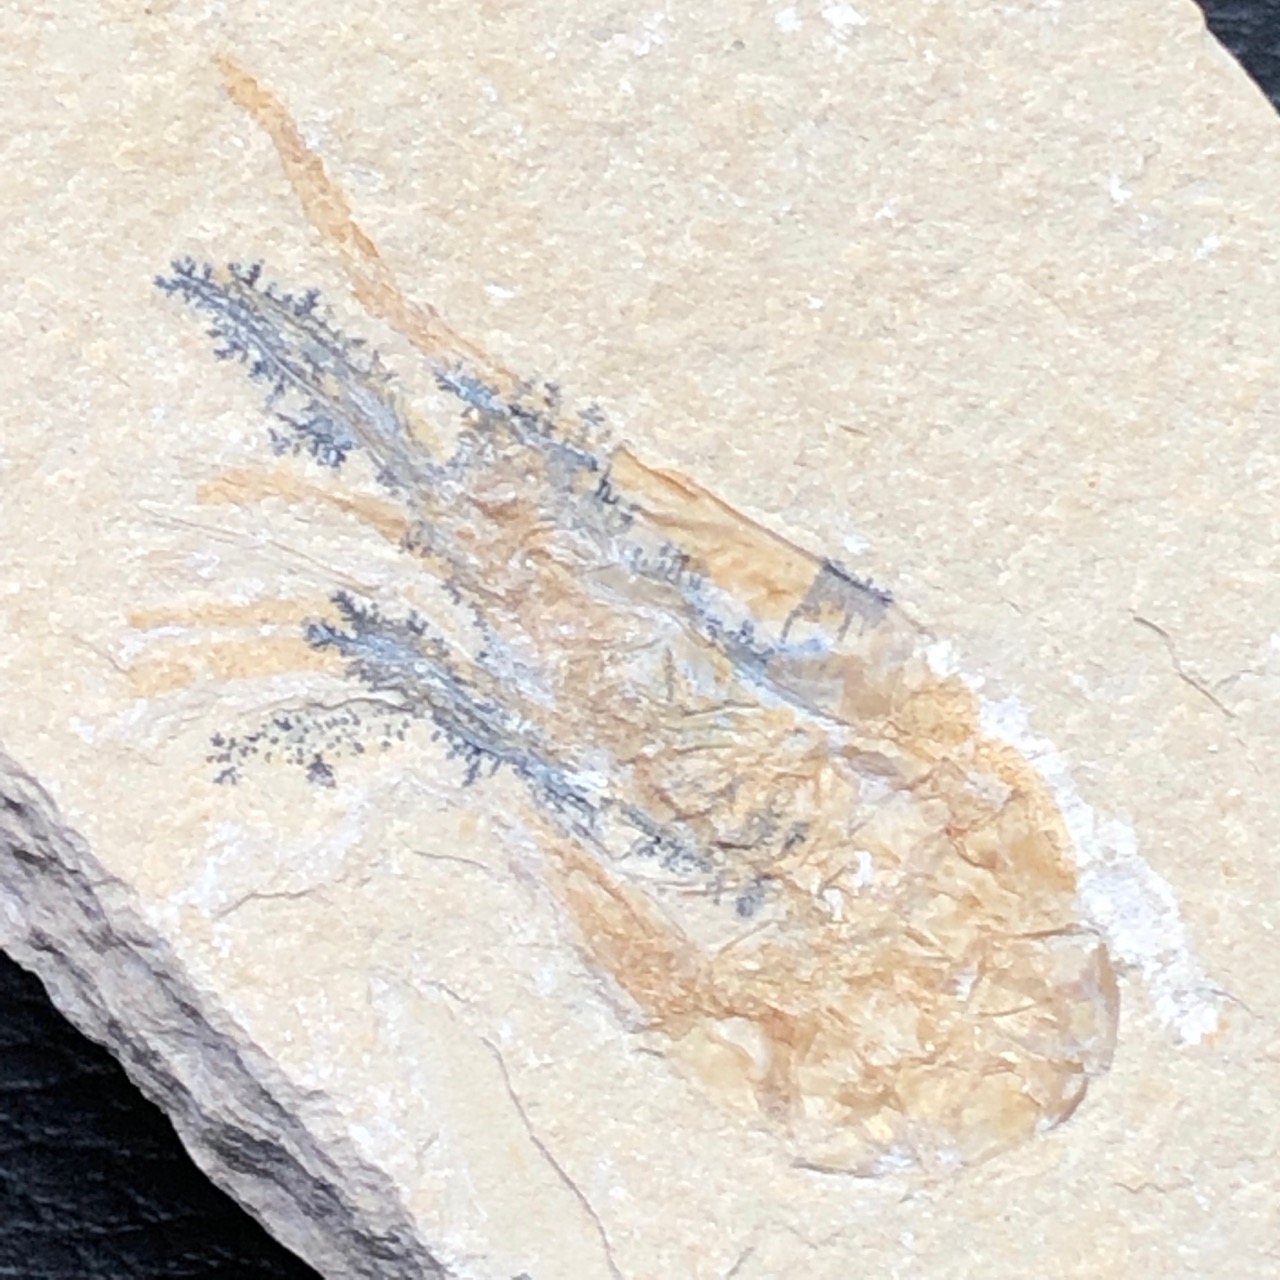 crevette fossile carpopenaeus callirostris